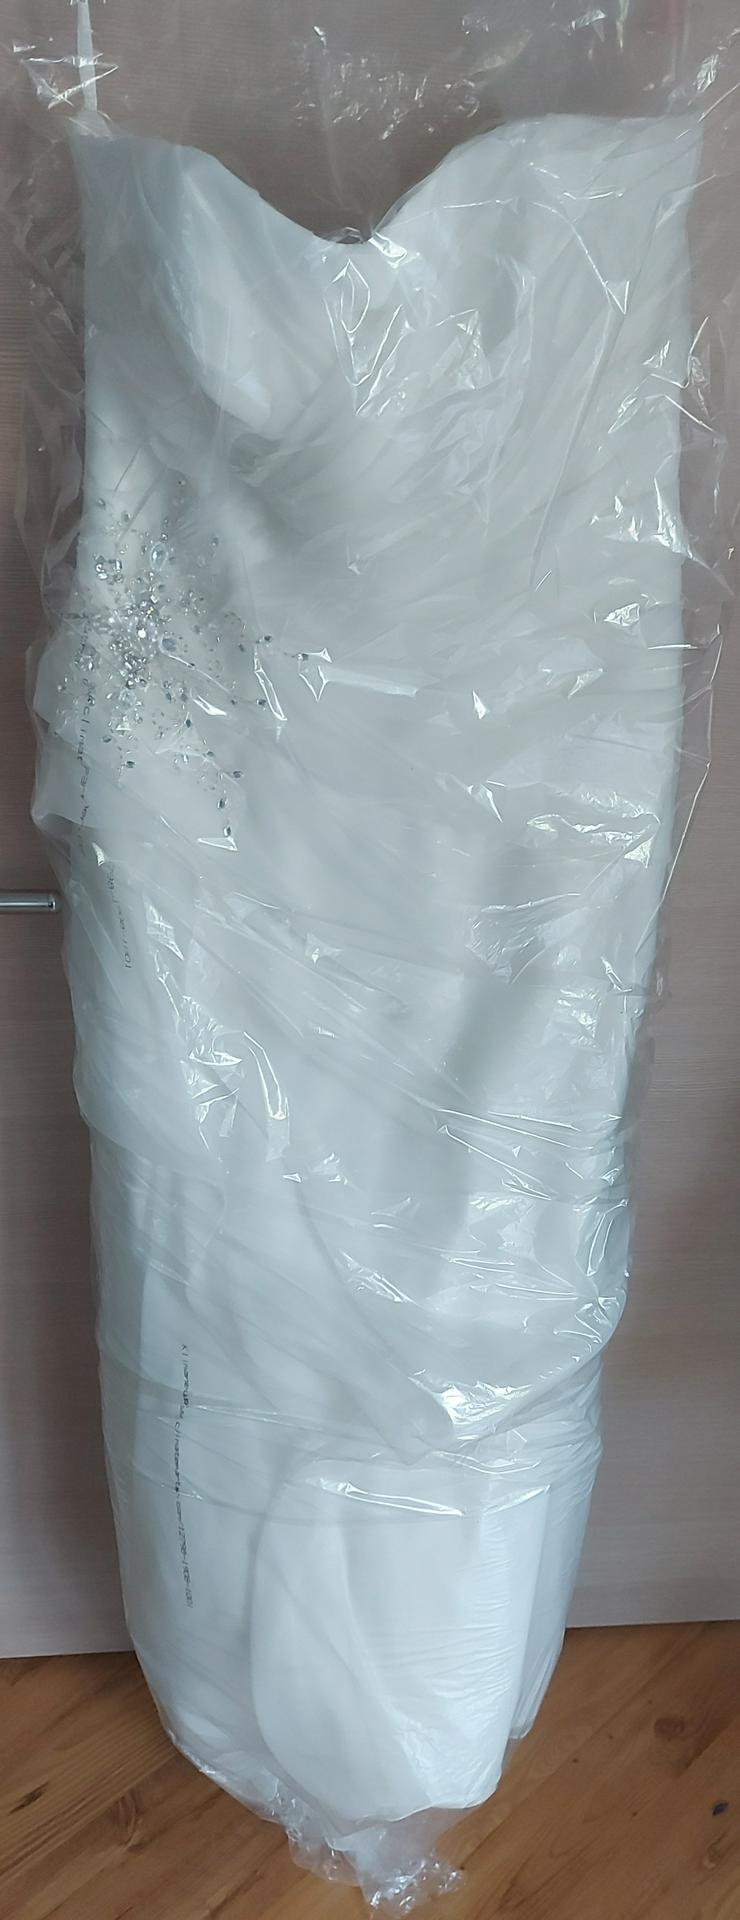 Brautkleid Creme weiß Gr. 44 46 inkl. Reifrock frisch gereinigt - Größen 44-46 / L - Bild 6